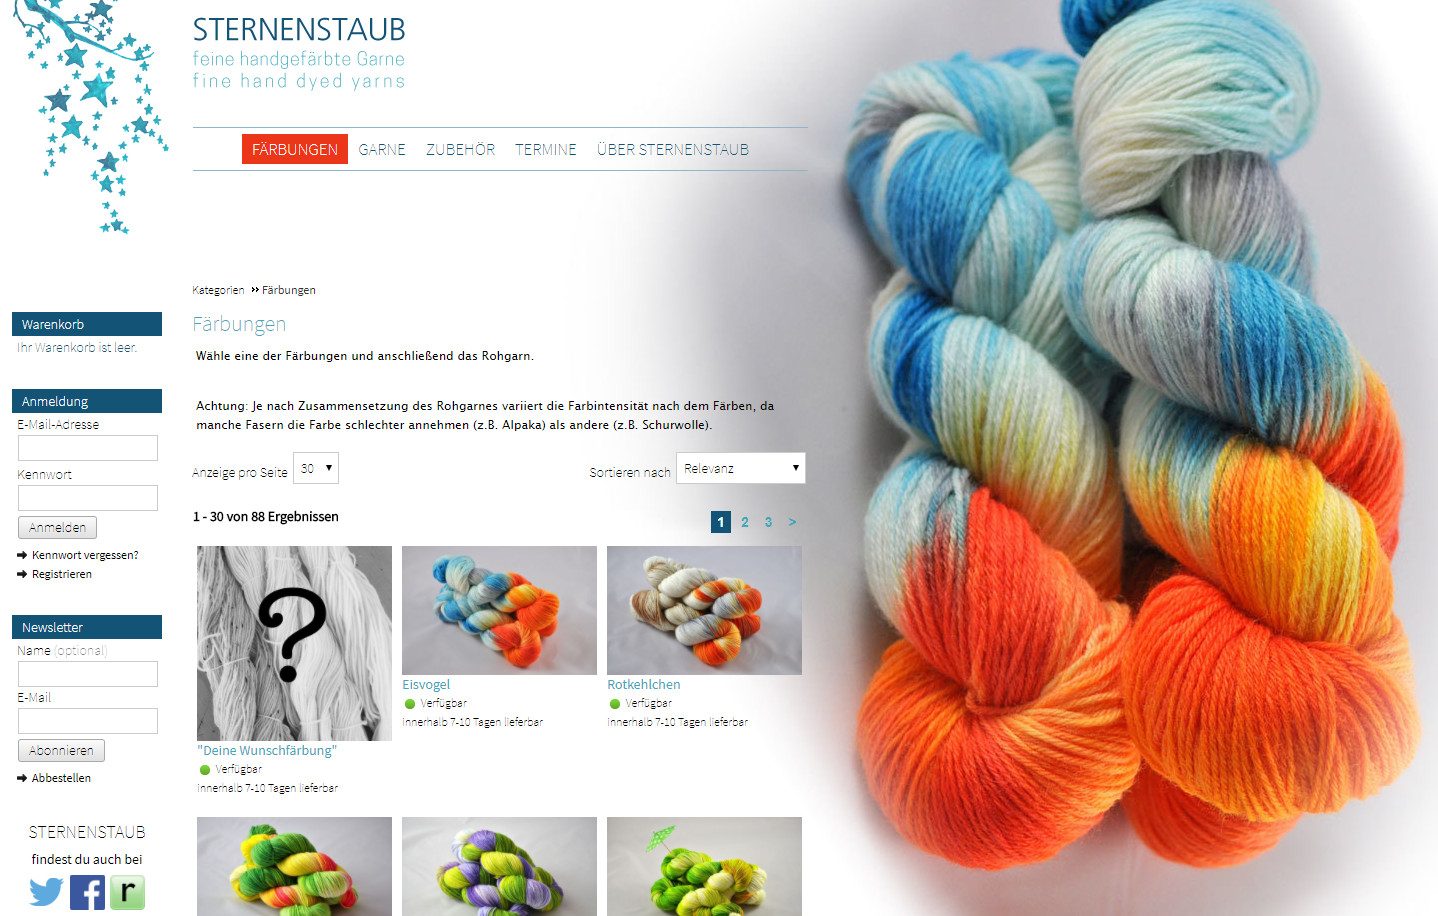 Sternenstaub - online yarn store